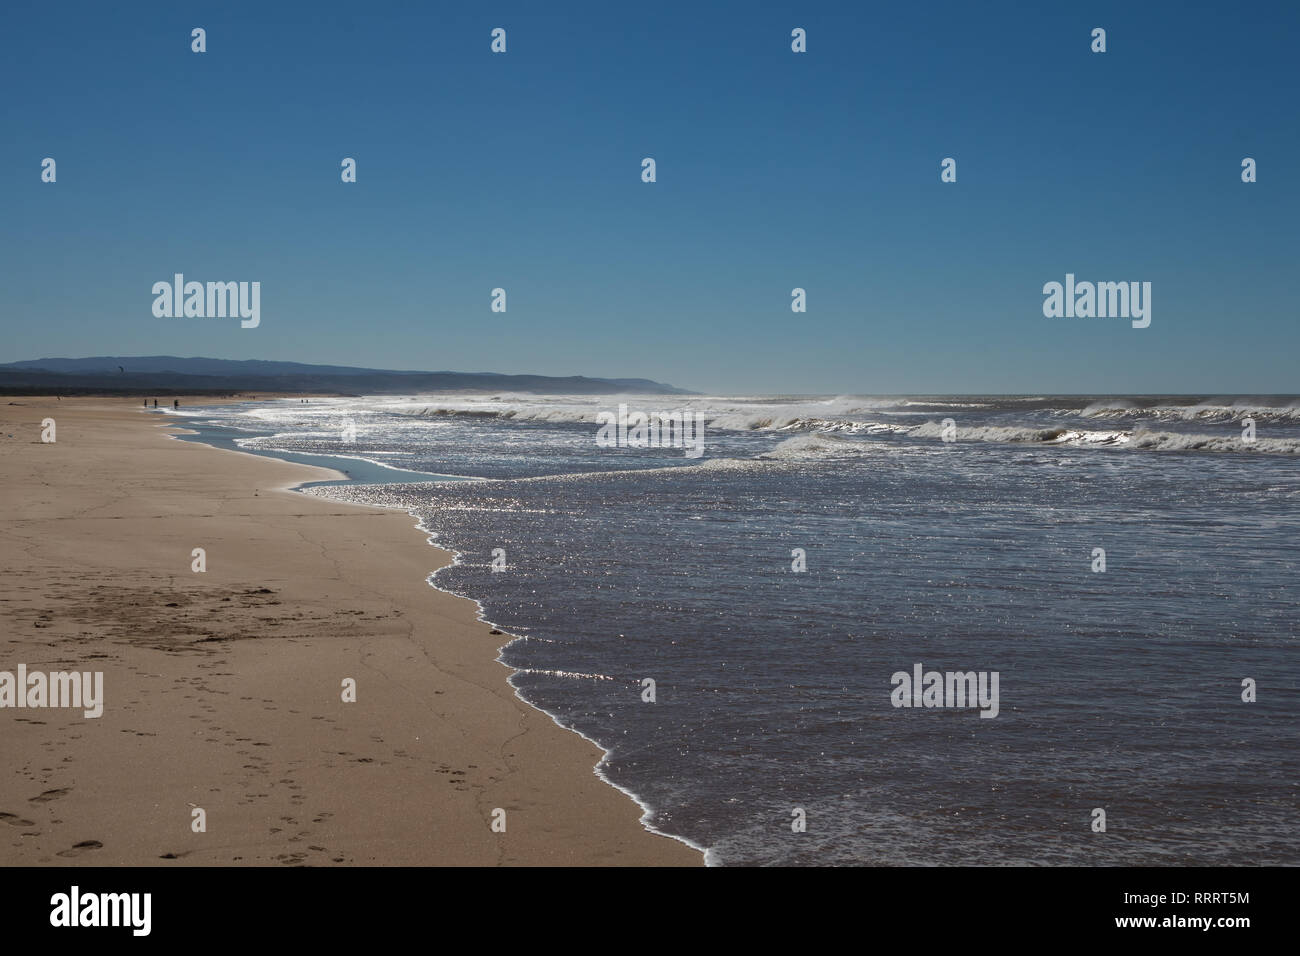 Calma autunno wellknown surfers beach. Giallo sabbia e oceano Atlantico con onde. Montagna in background. Azzurro cielo. Sidi Kaouki, Marocco. Foto Stock